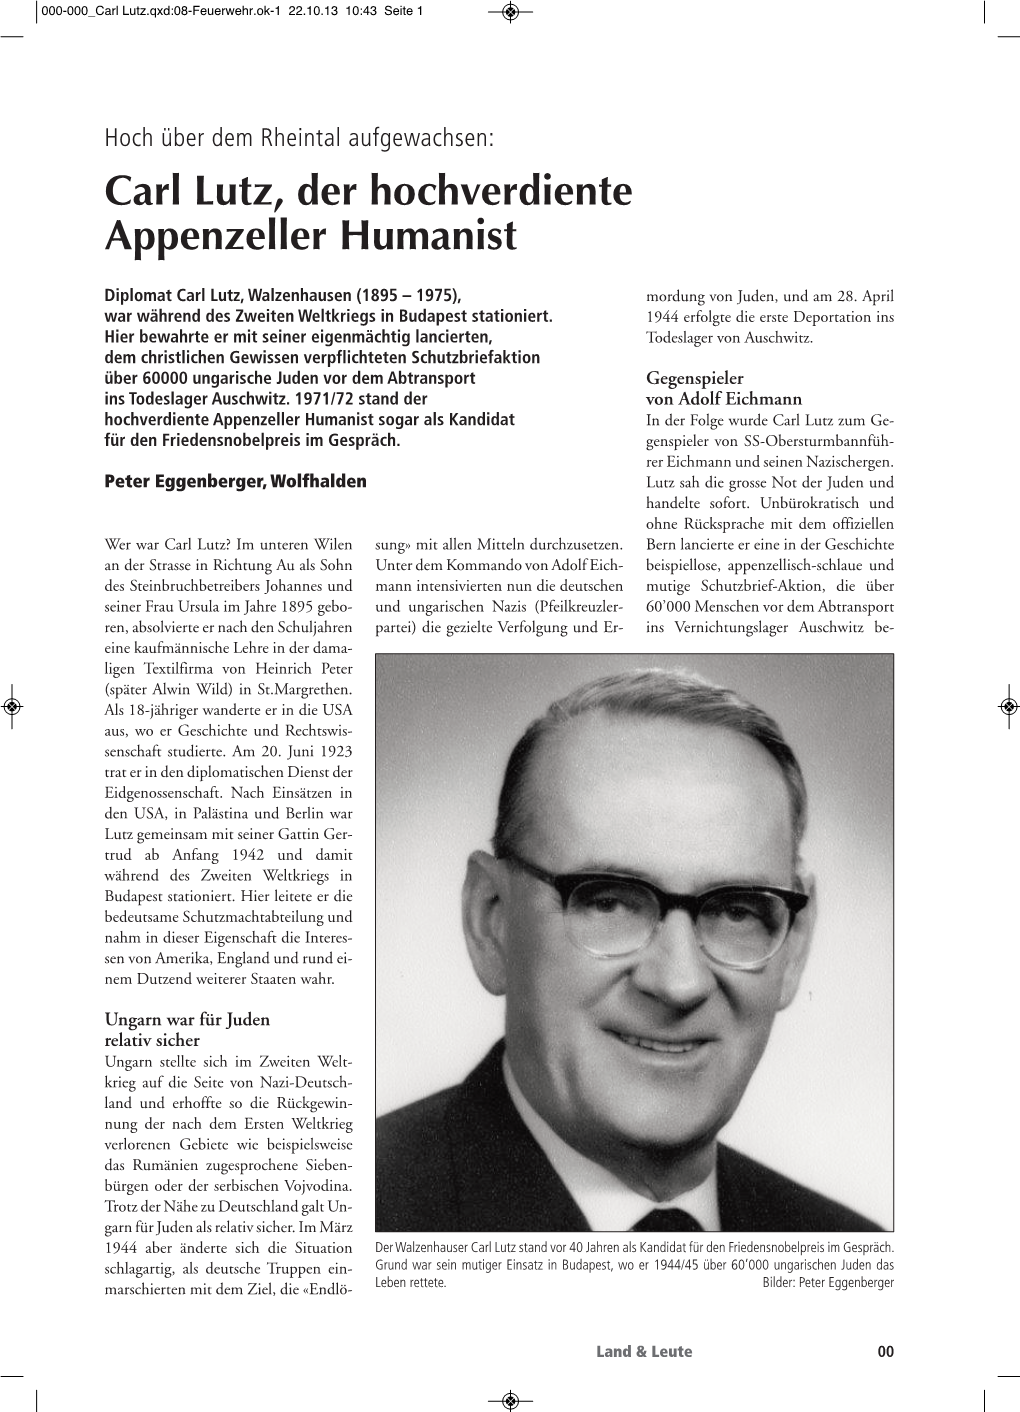 Carl Lutz, Der Hochverdiente Appenzeller Humanist